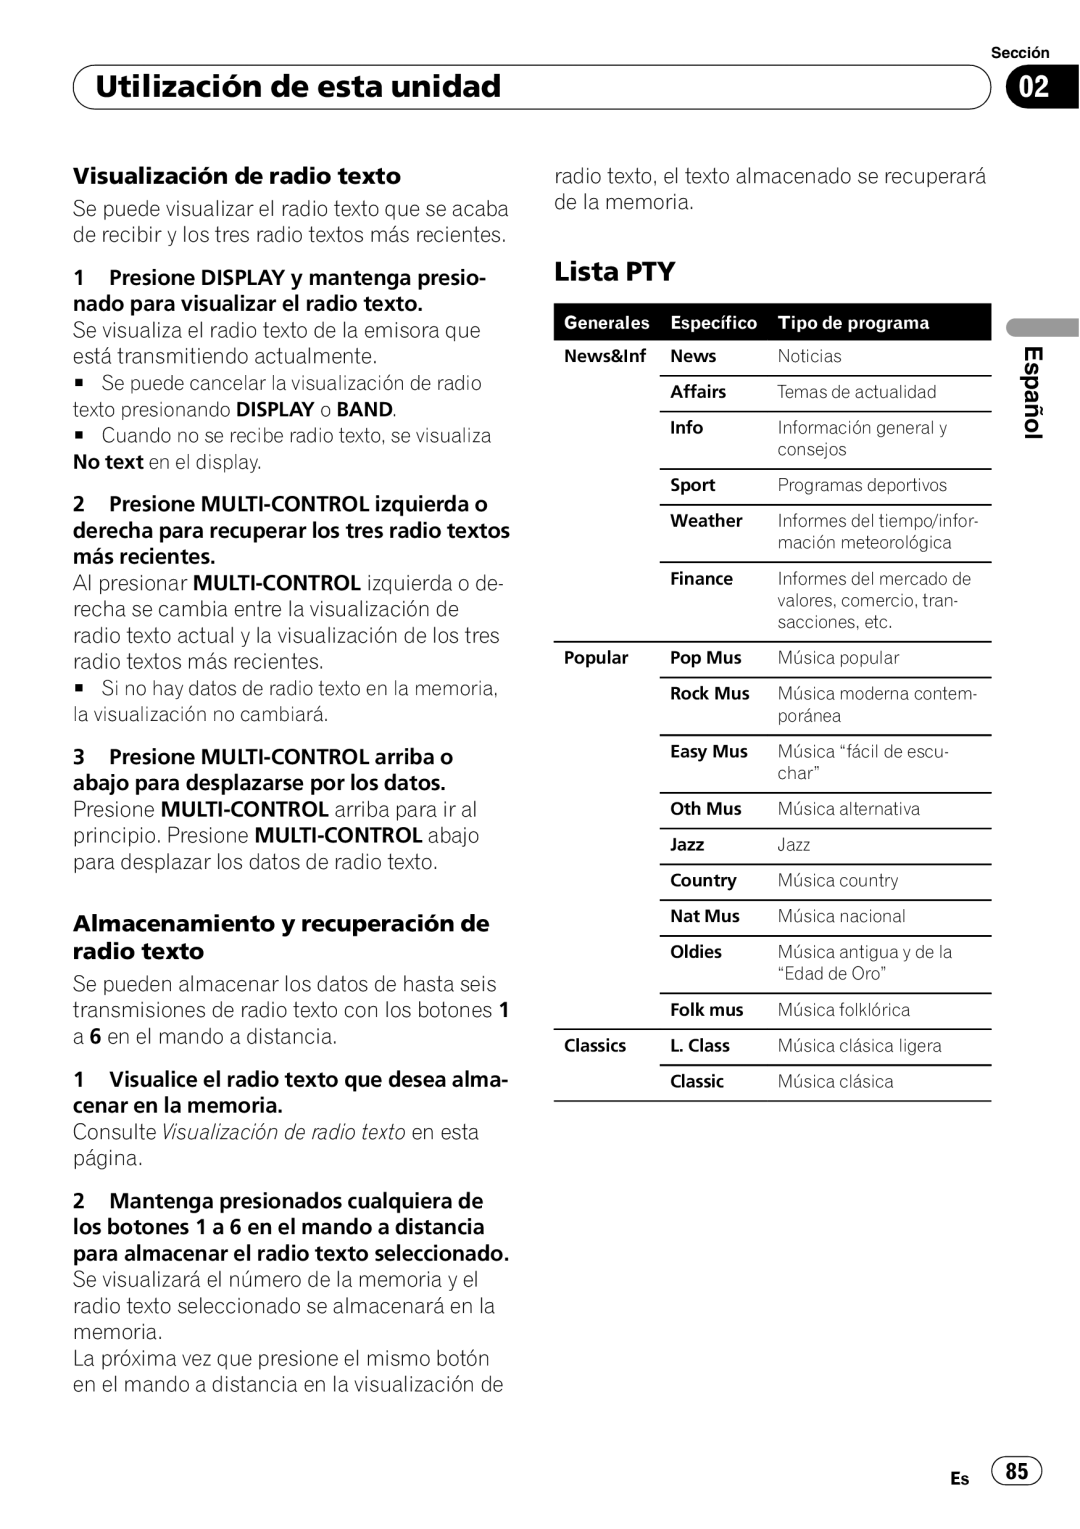 Pioneer DEH-P85BT Lista PTY, Visualización de radio texto, Almacenamiento y recuperación de radio texto, Español 